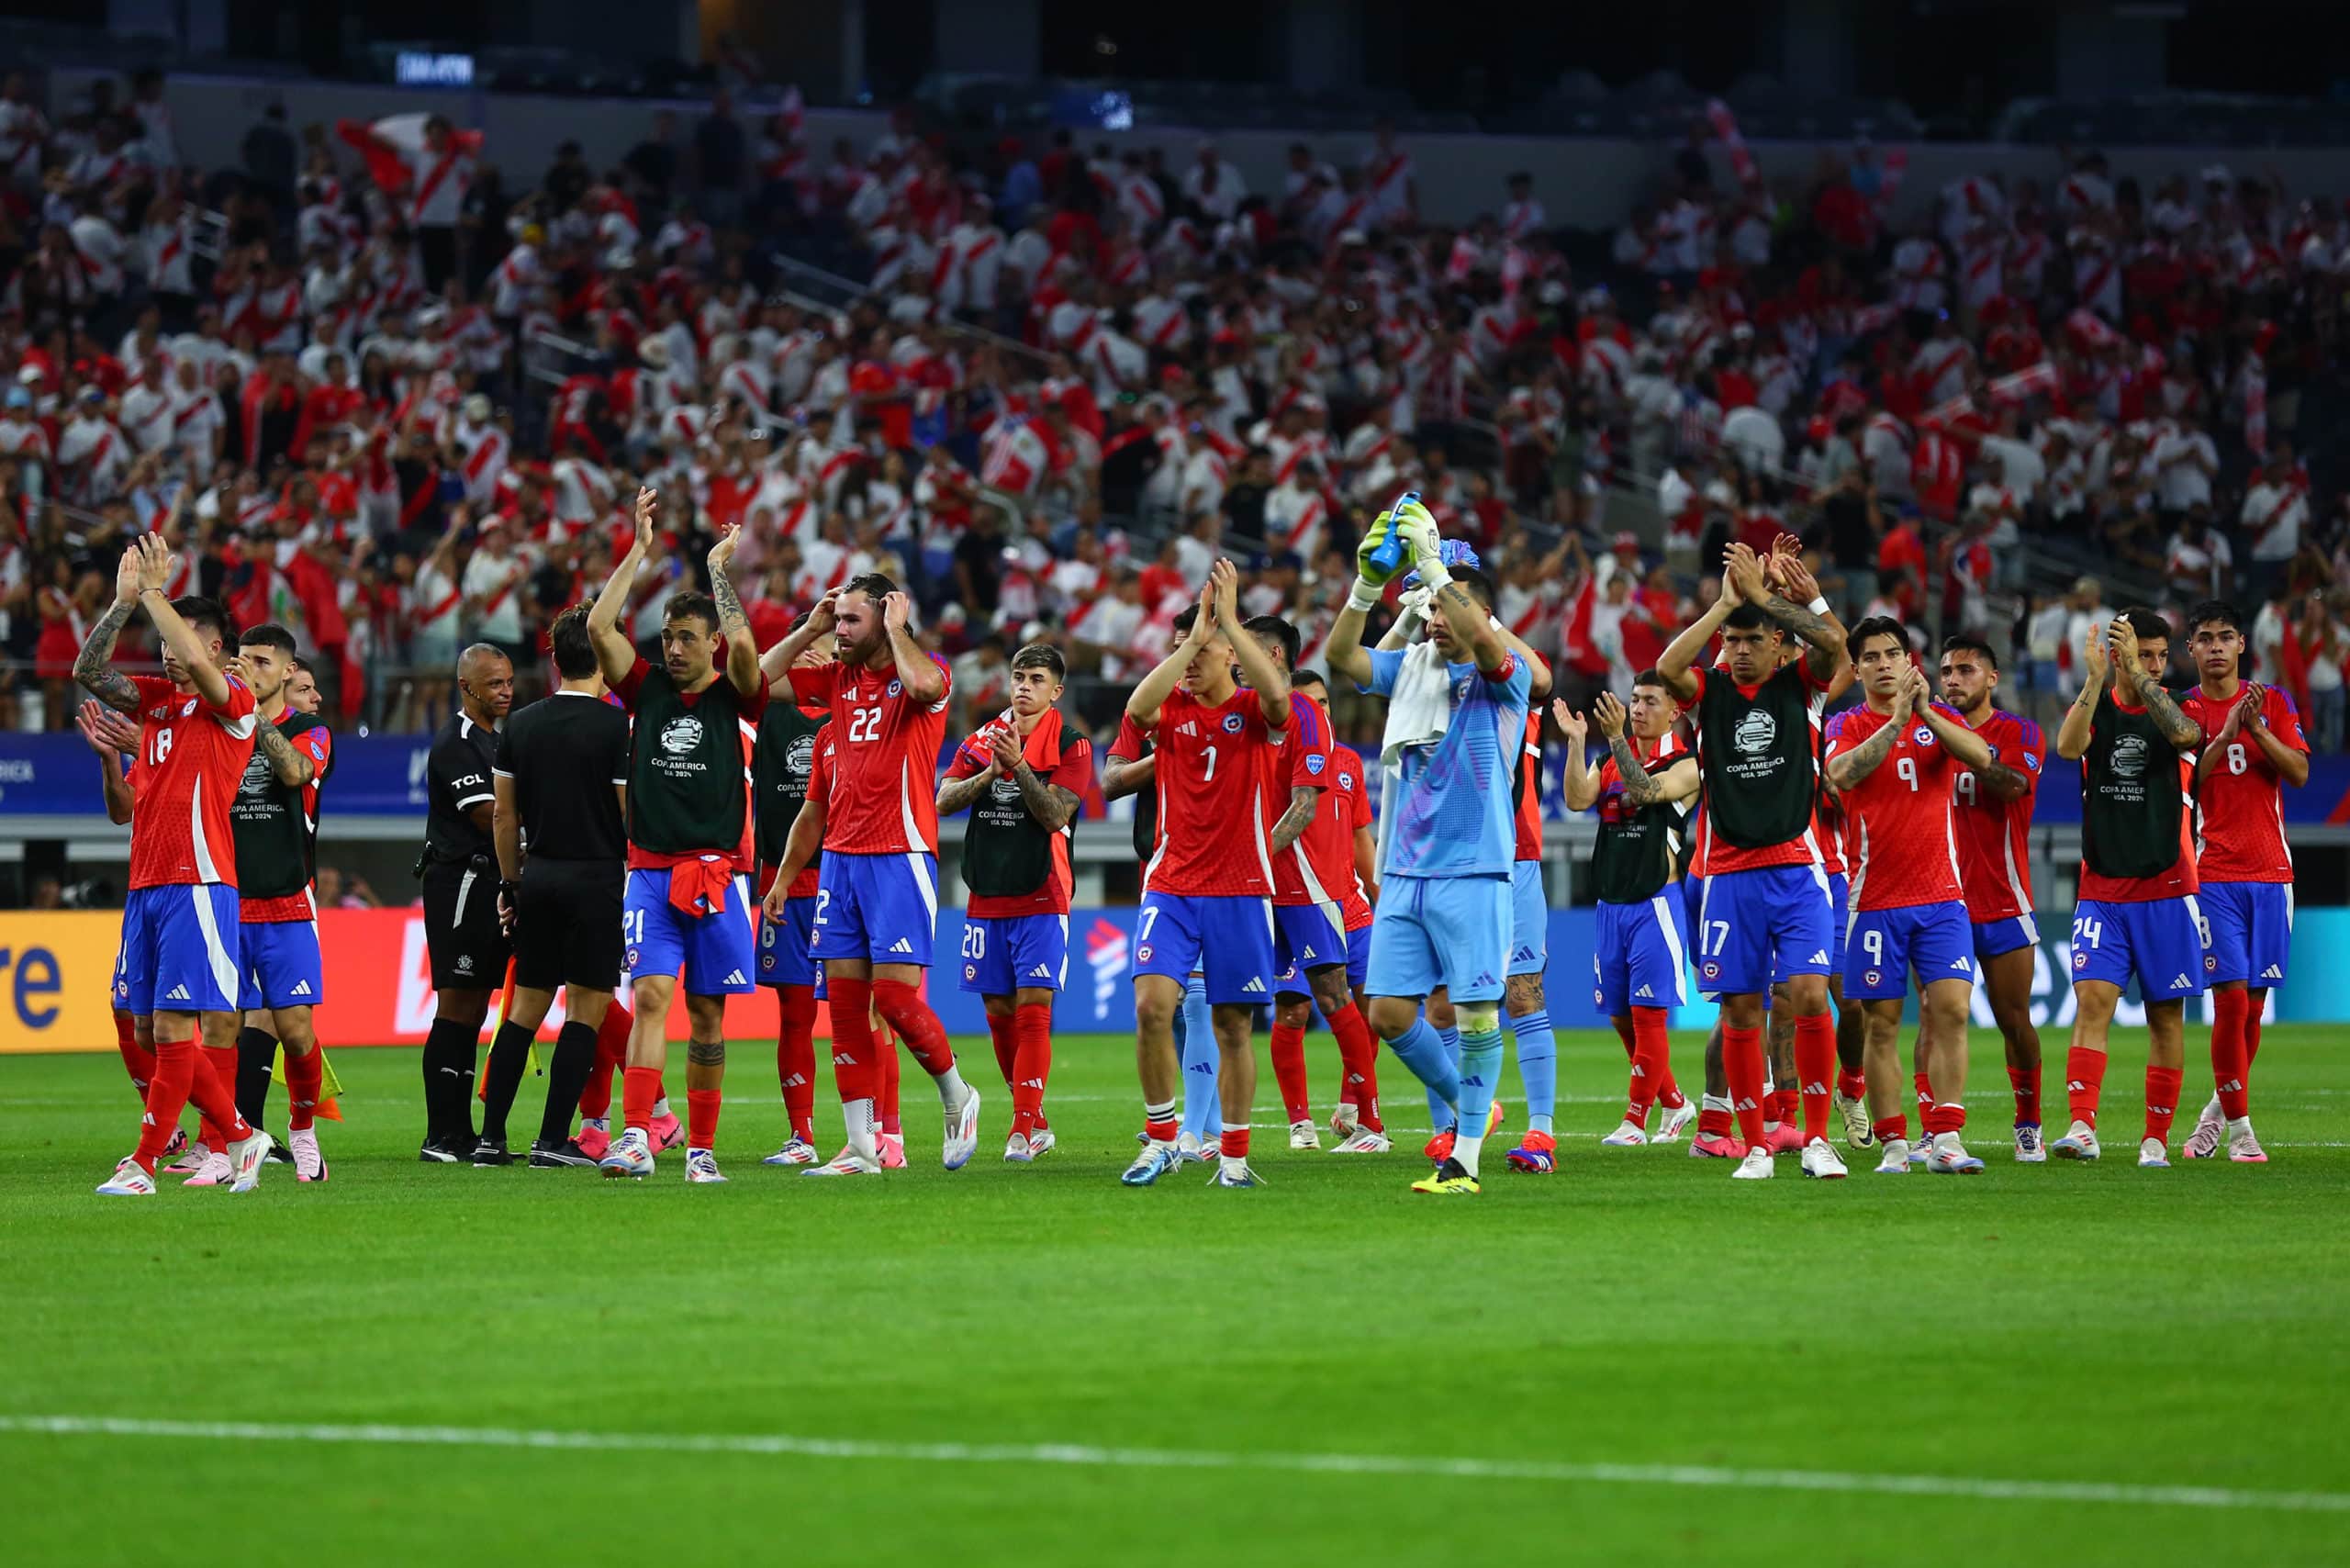 ¡La Roja Enfrenta a Argentina en Busca de la Hazaña en la Copa América!